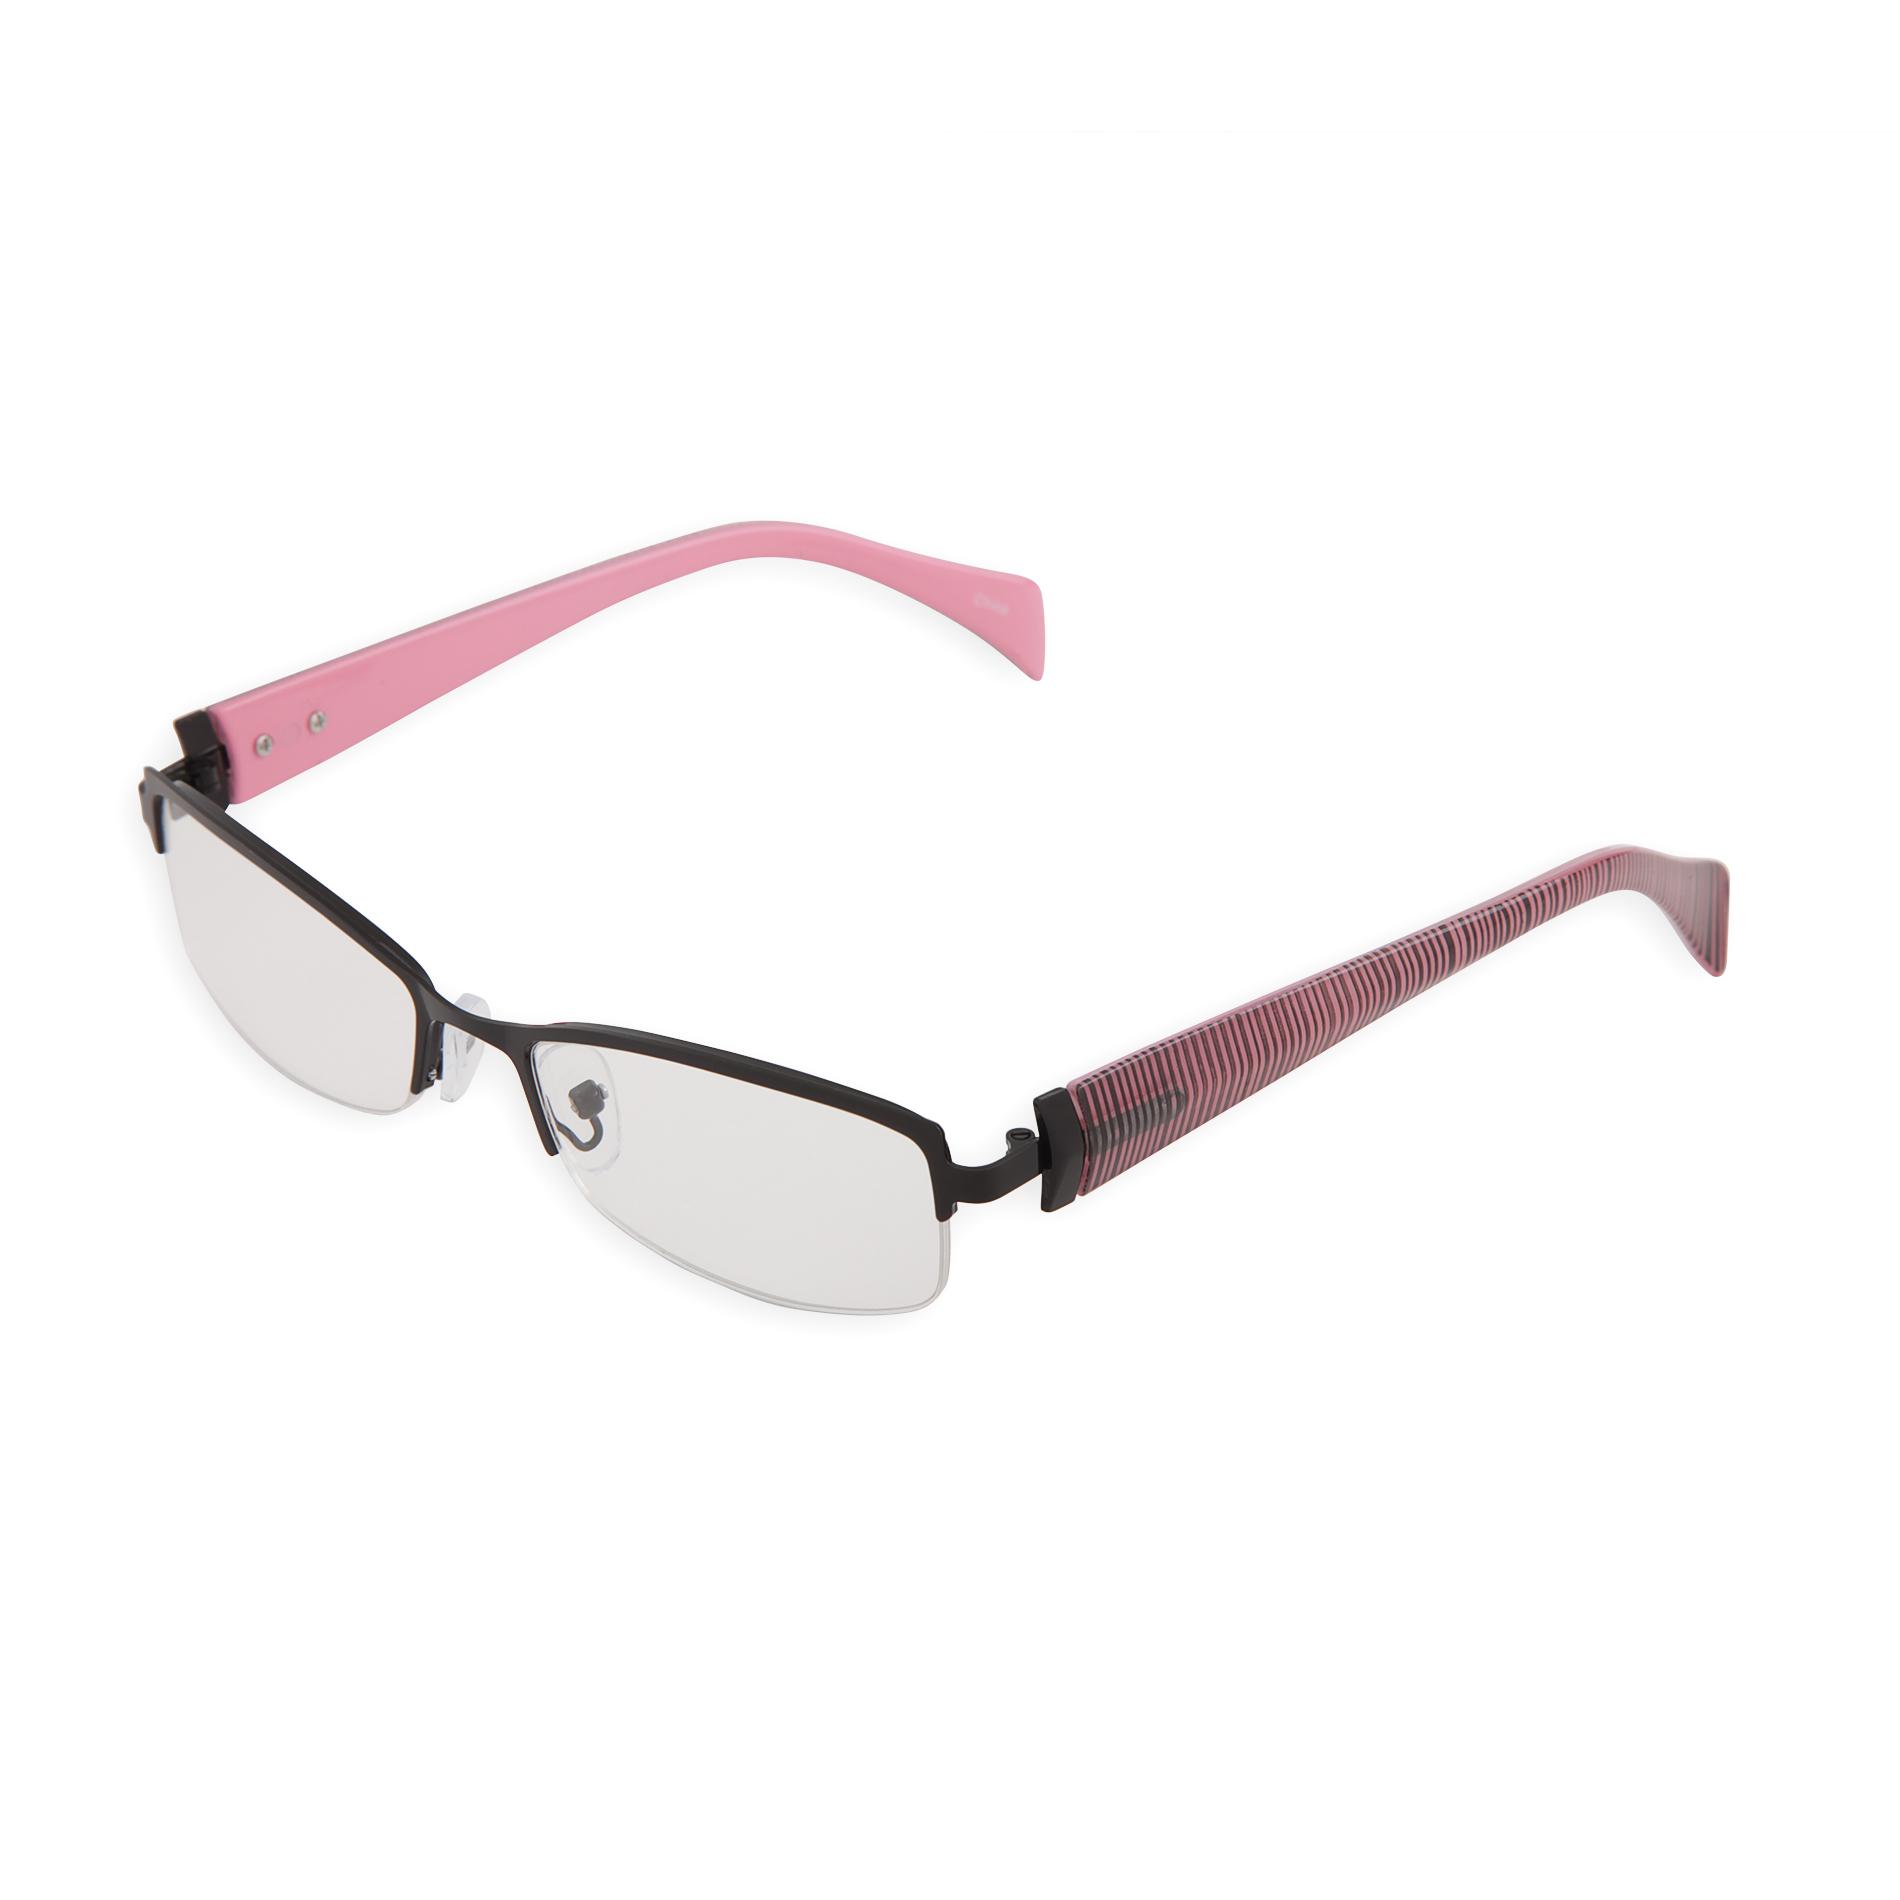 Women's Rectangular Reading Glasses 2.75 - Striped